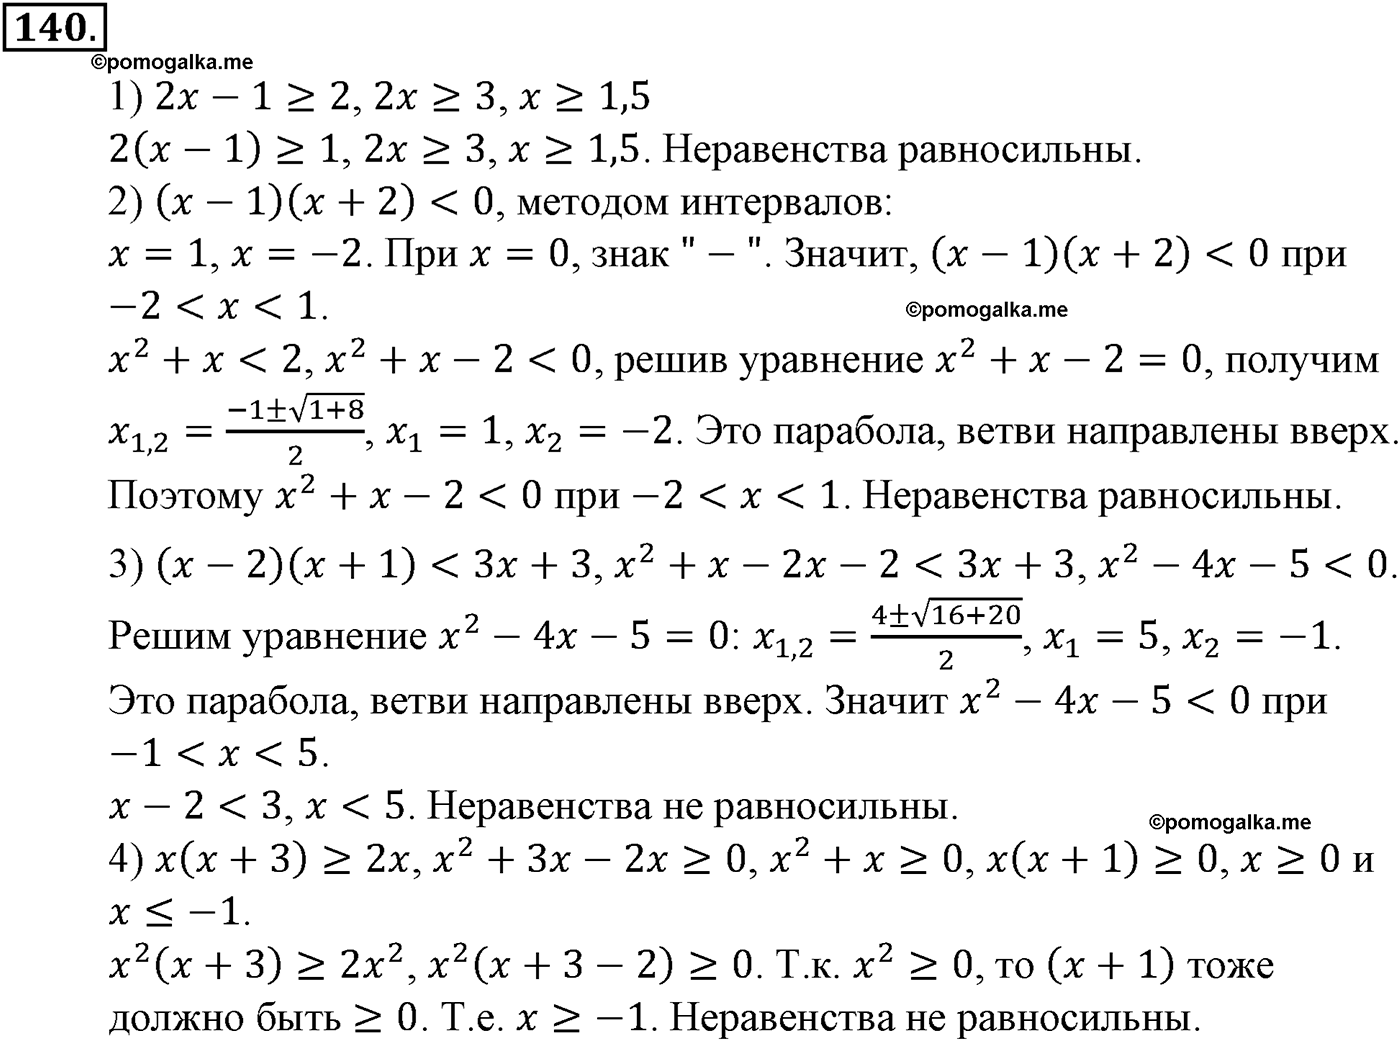 разбор задачи №140 по алгебре за 10-11 класс из учебника Алимова, Колягина